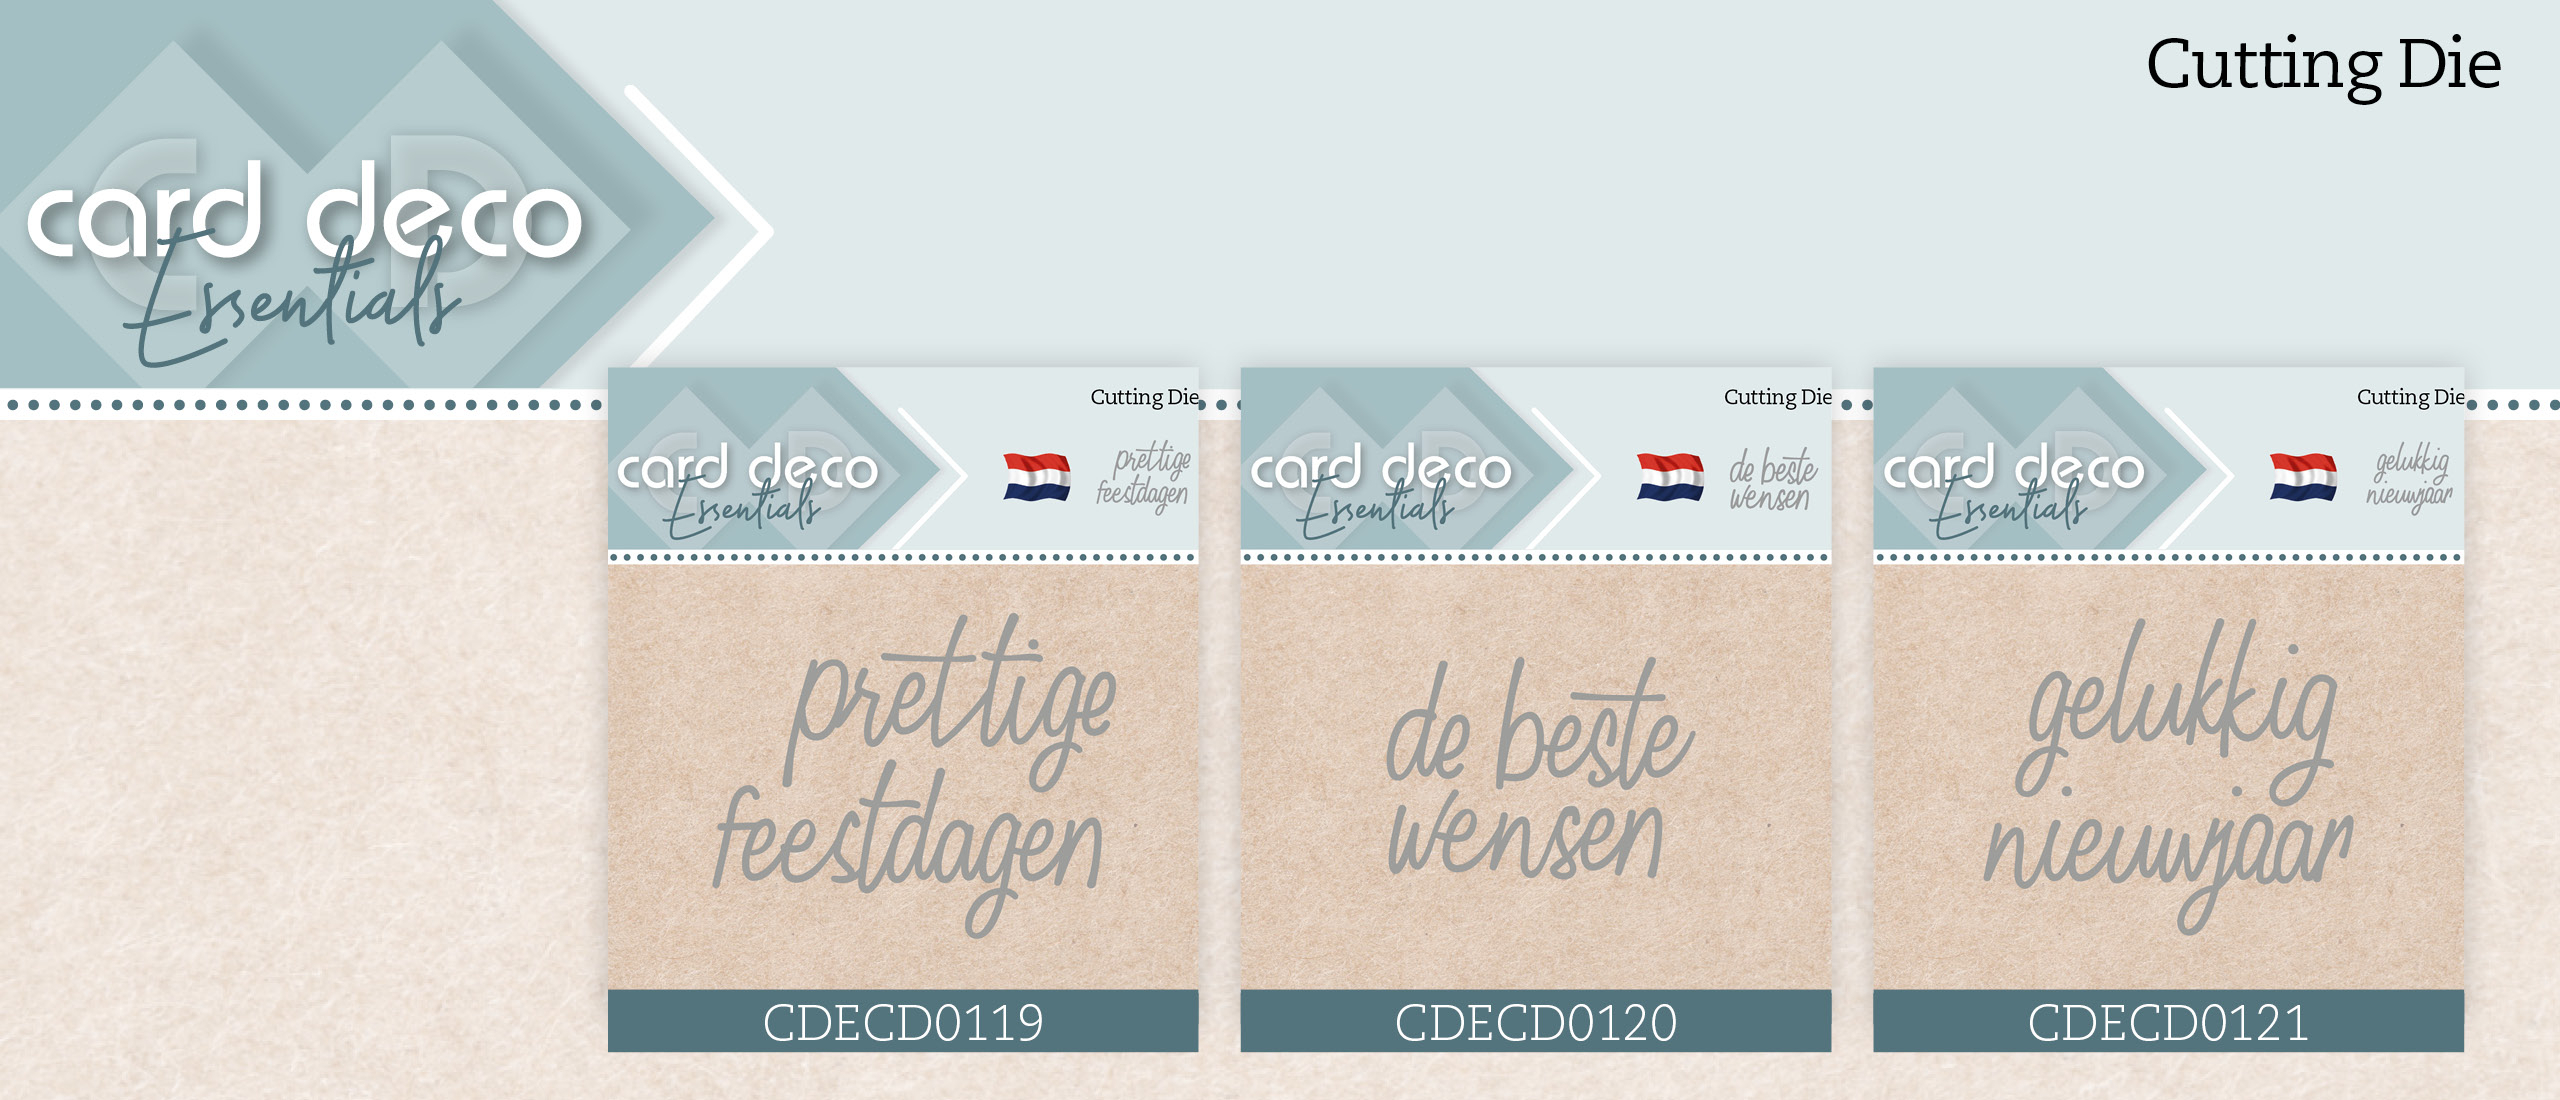 Handige nieuwe Tekst Dies van Card Deco: CDECD0119, CDECD020 en CDECD0121